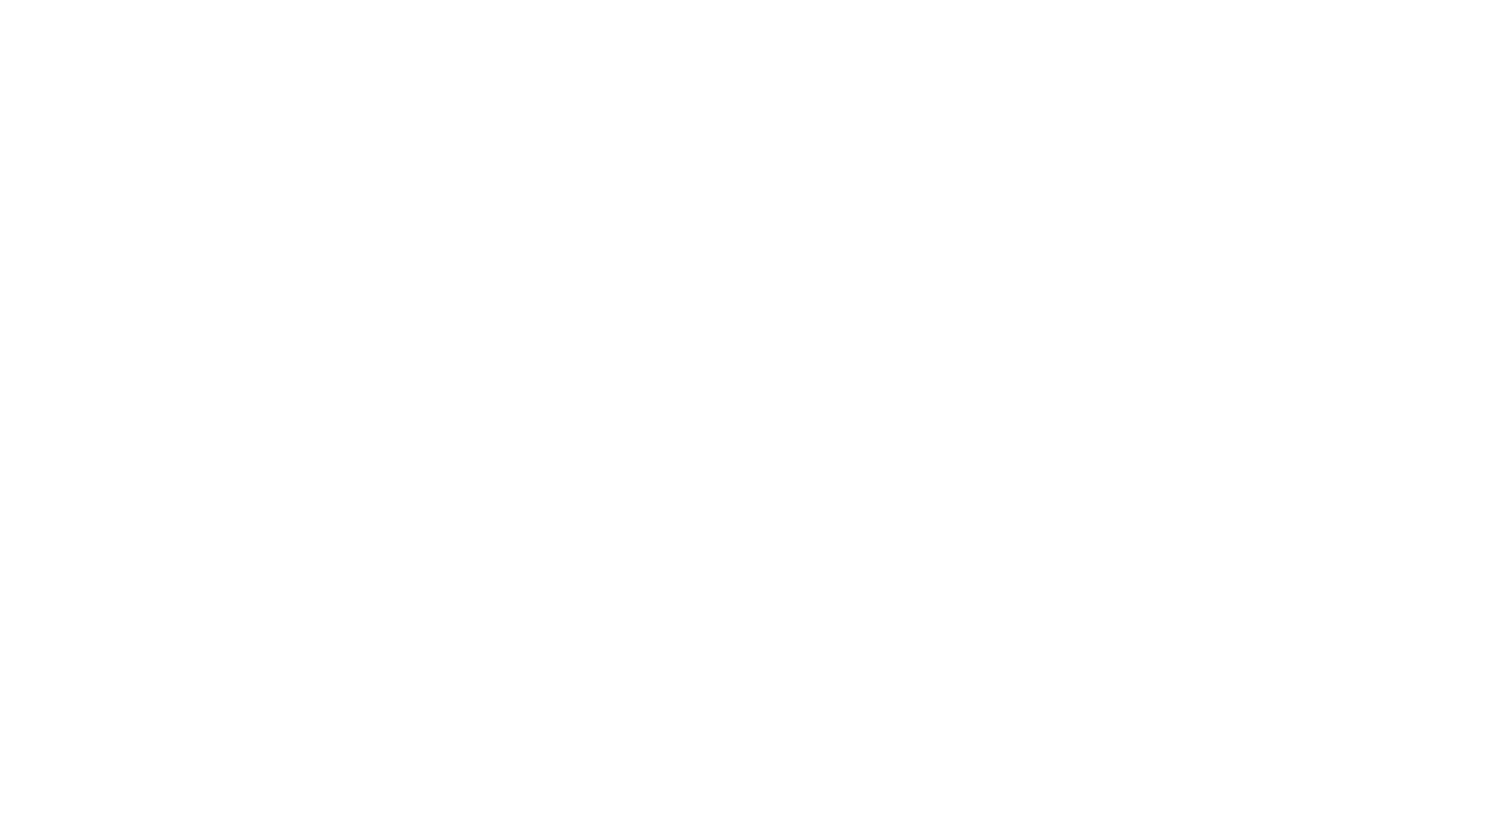 Norfolk Interior Specialists